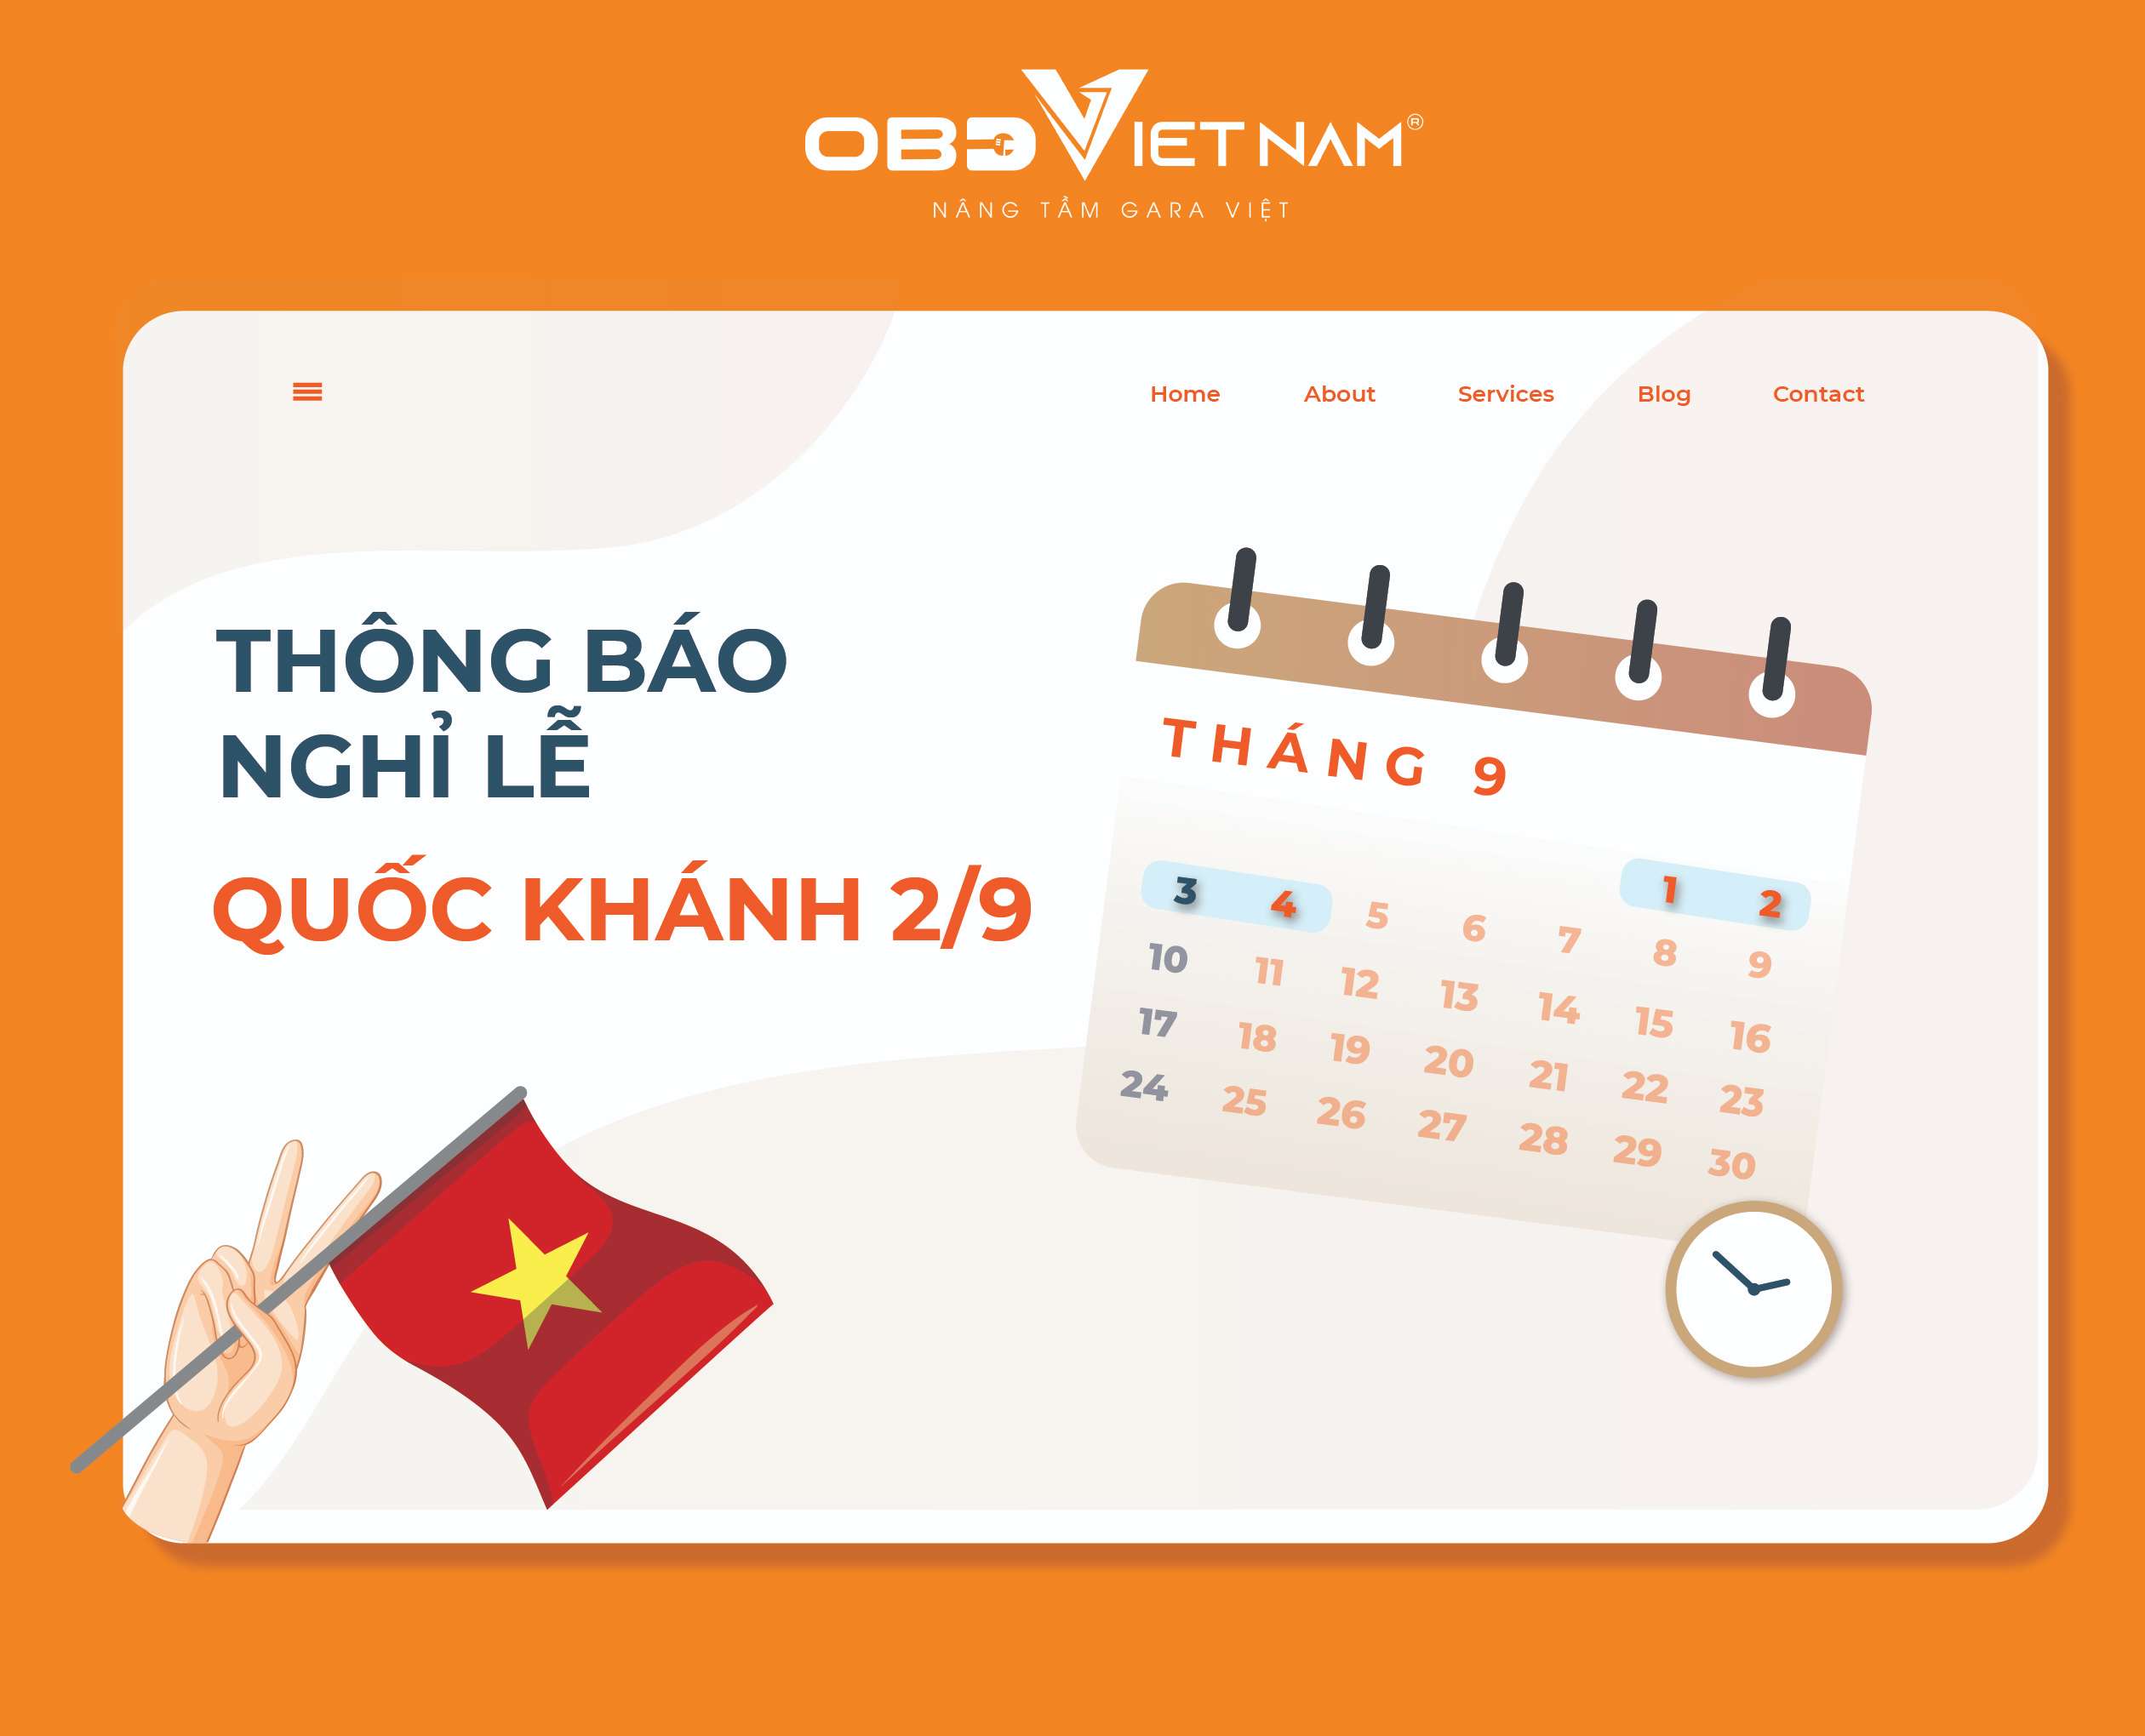 thong-bao-nghi-le-2-9-obdvietnam